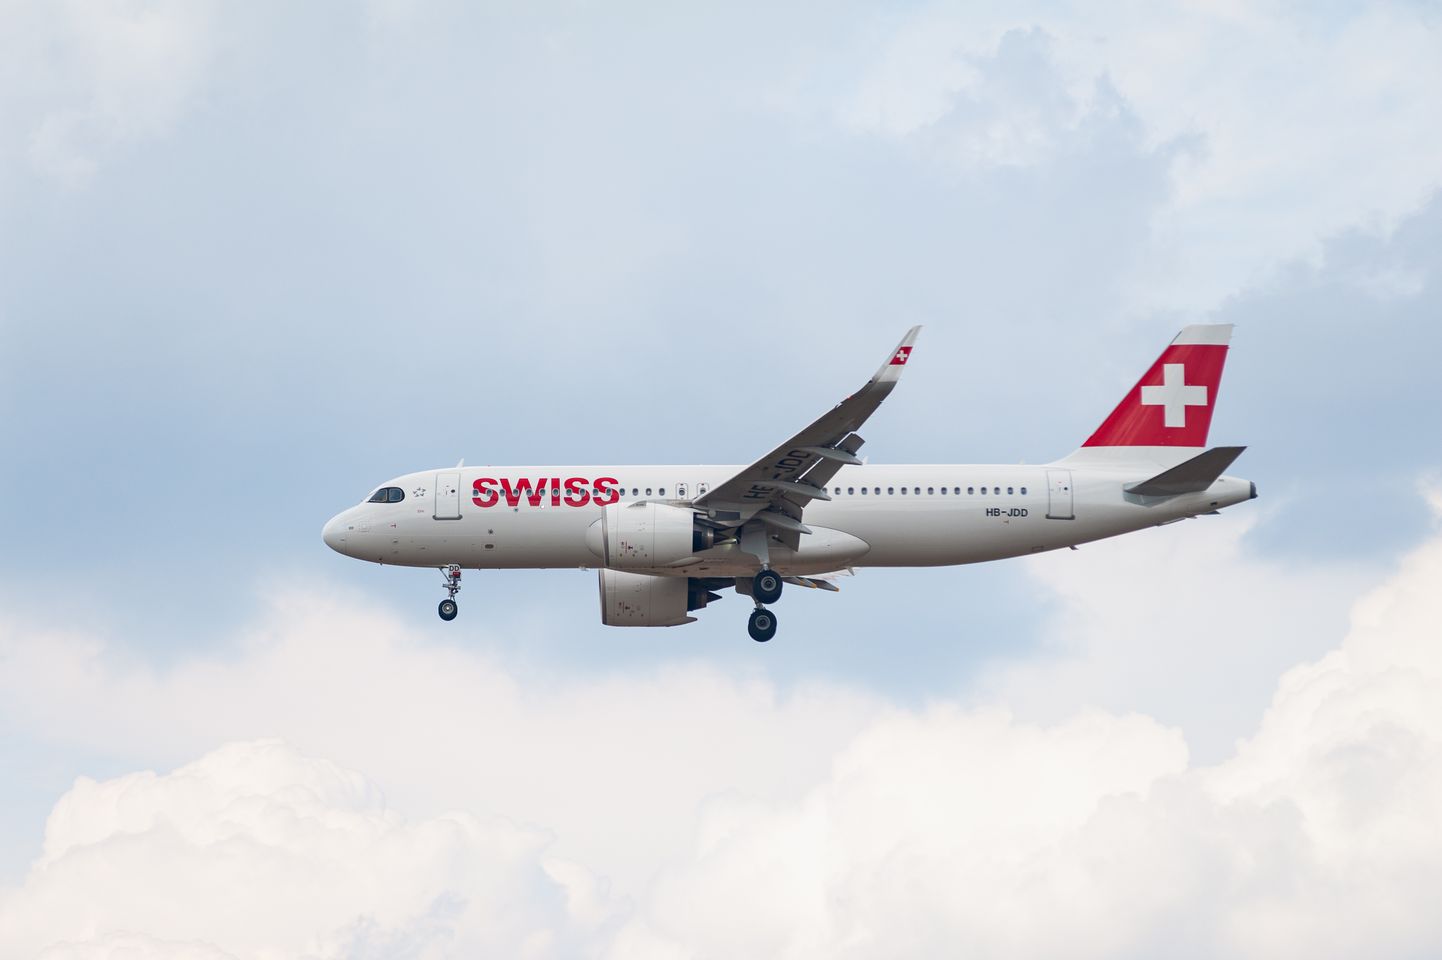 Swiss Airlines'i lennuk. Foto on illustratiivne.